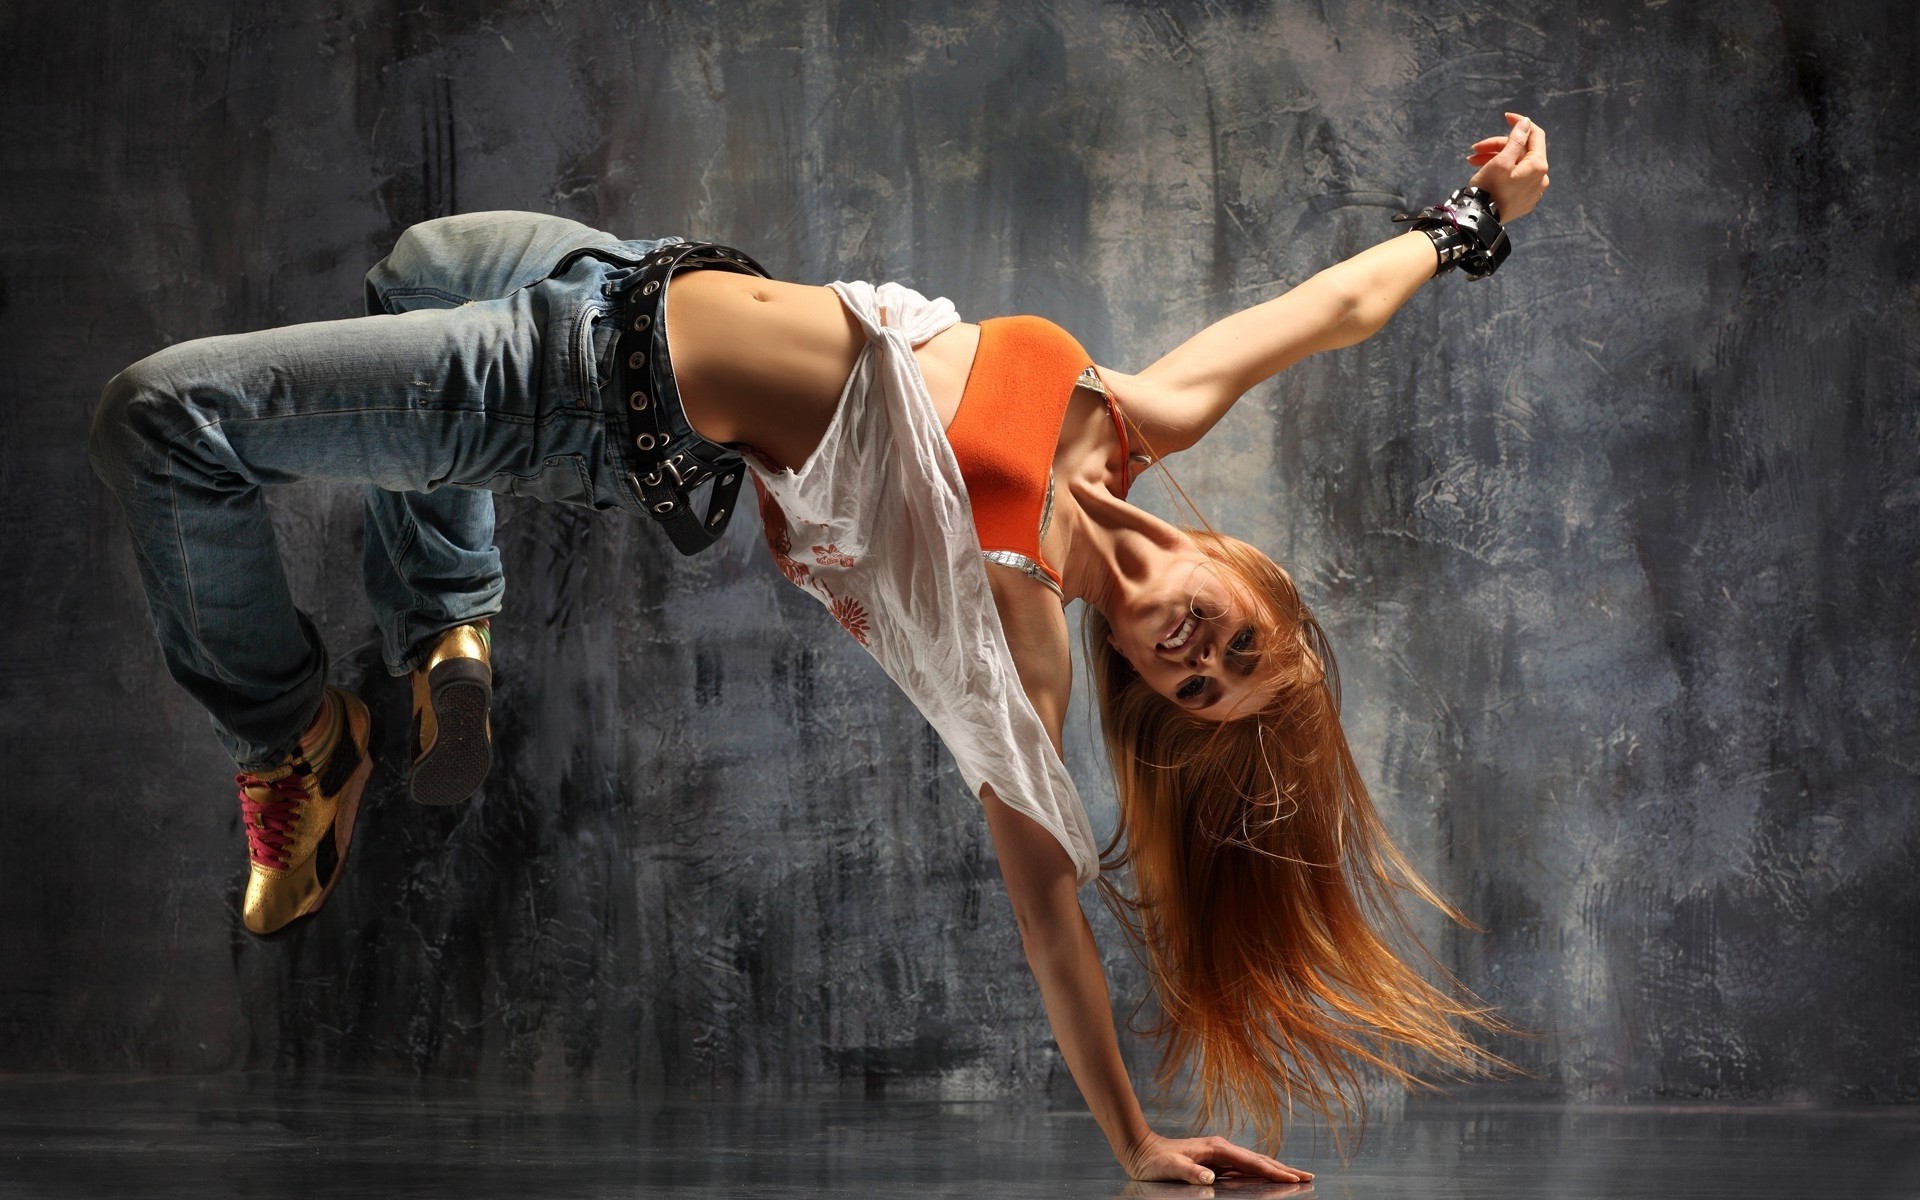 фитнес производительности танцы женщина музыка танцор взрослый один движения действие реп мода отдых баланс балет упражнения девушка носить удовольствие